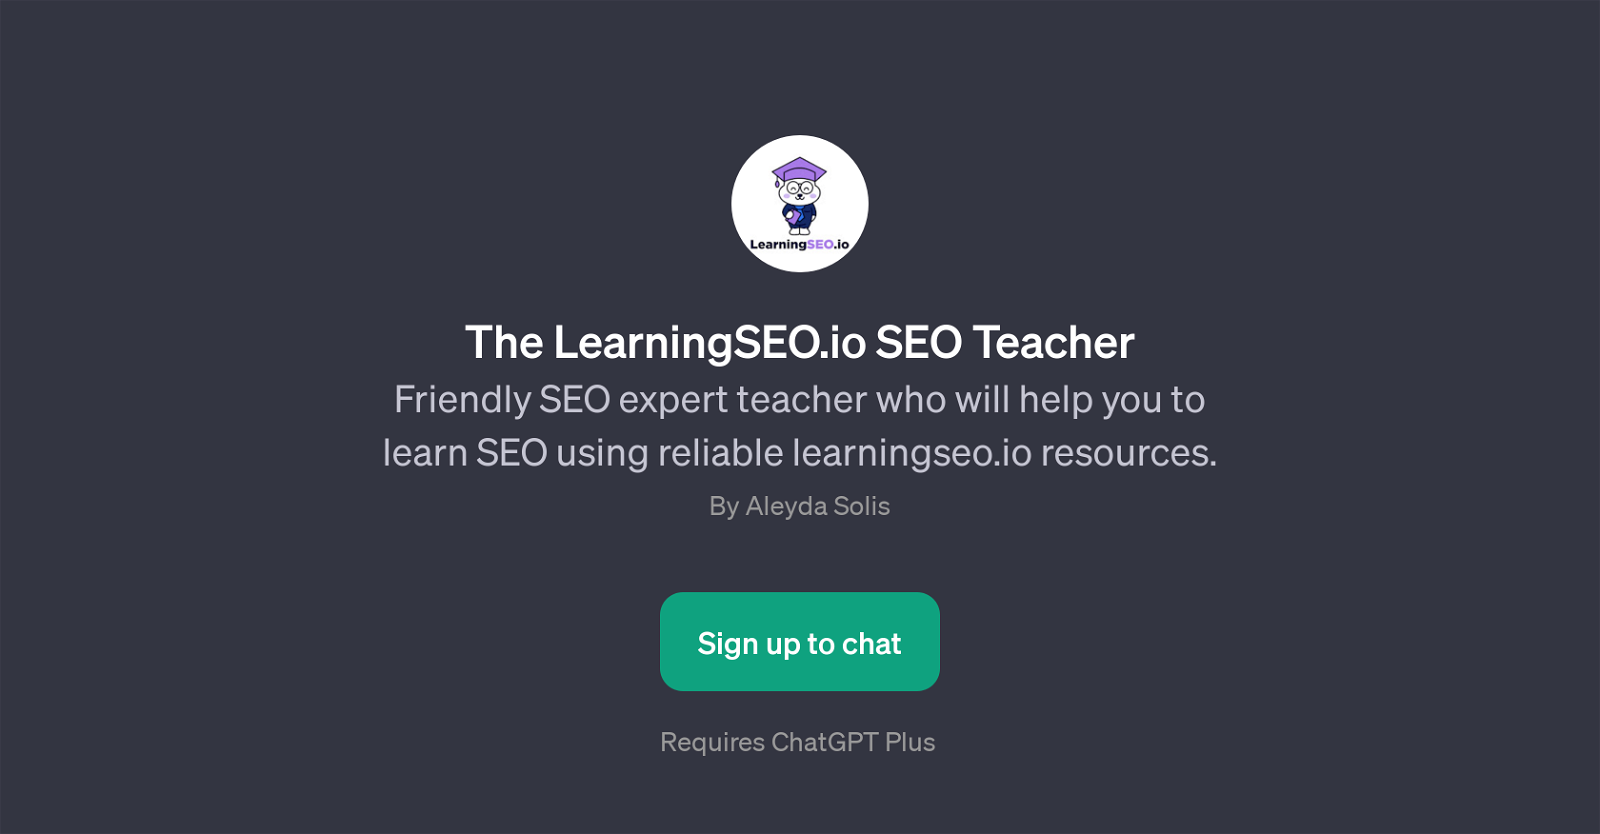 The LearningSEO.io SEO Teacher website